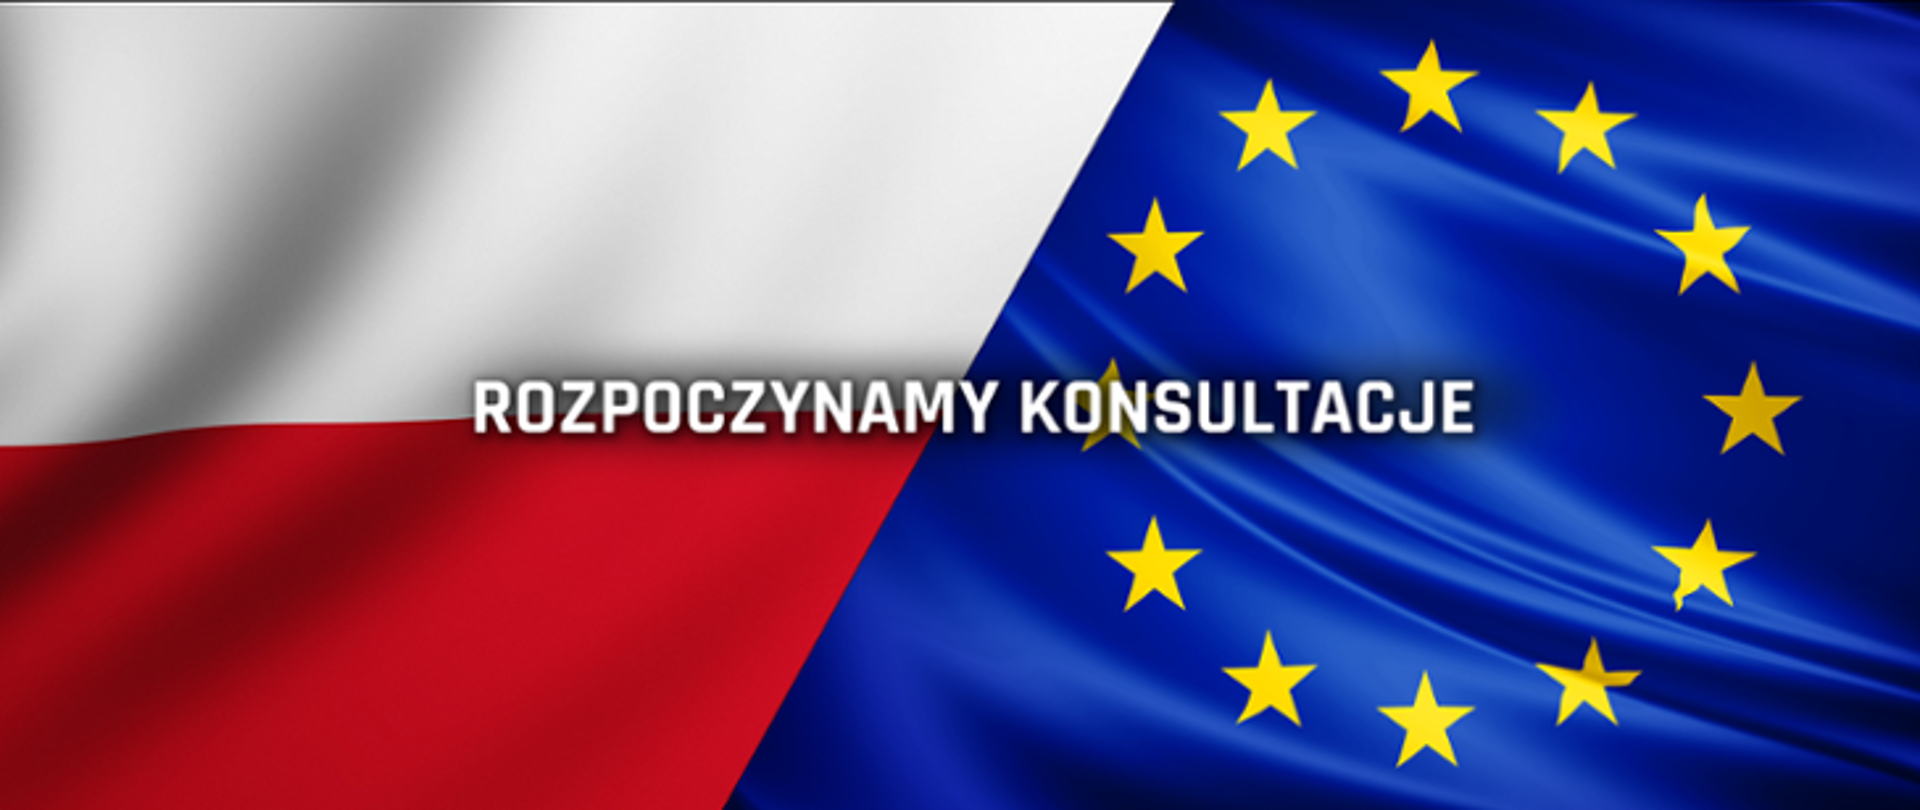 Po lewej stronie flaga Polski, po prawej UE. Na środku napis: rozpoczynamy konsultacje